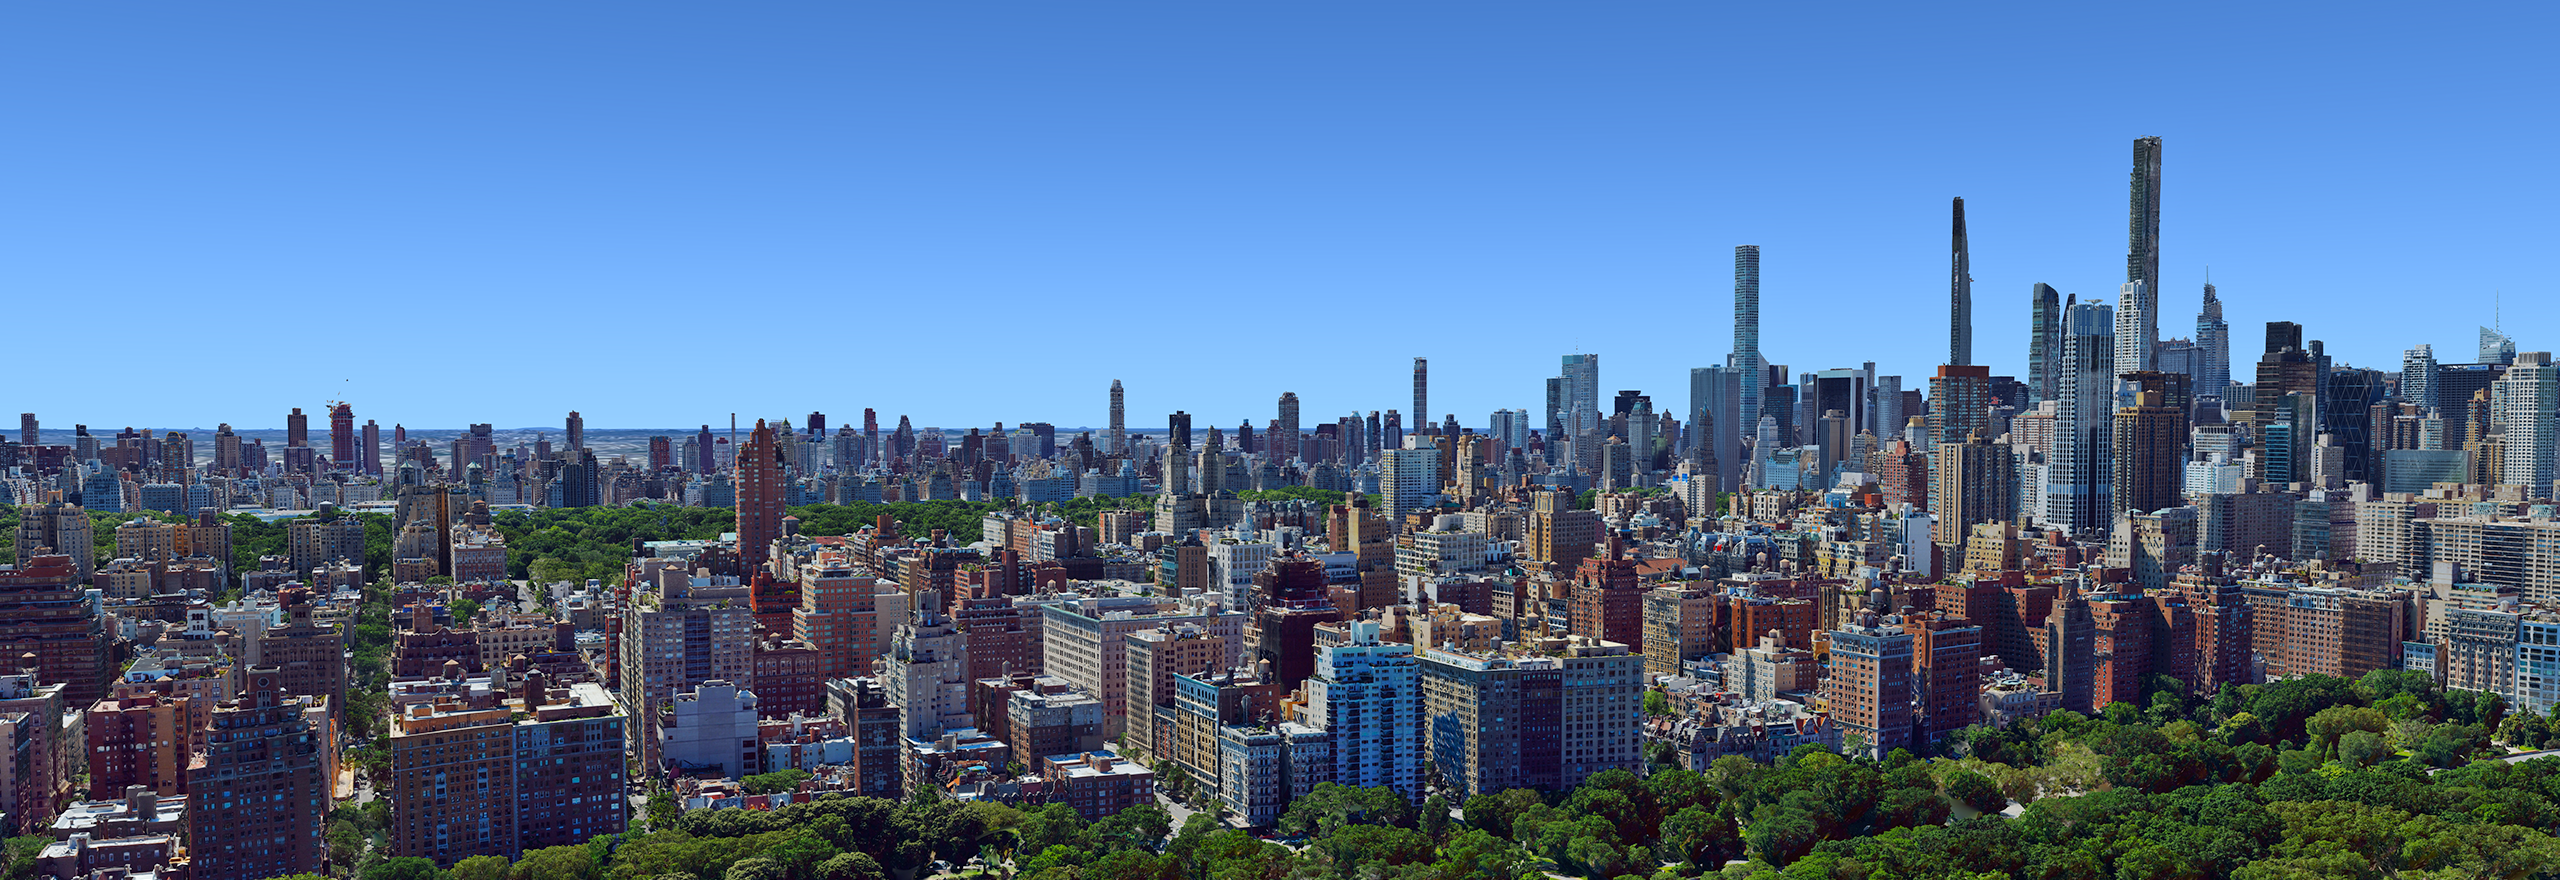 Modelo 3D de malha aérea da cidade de Nova York